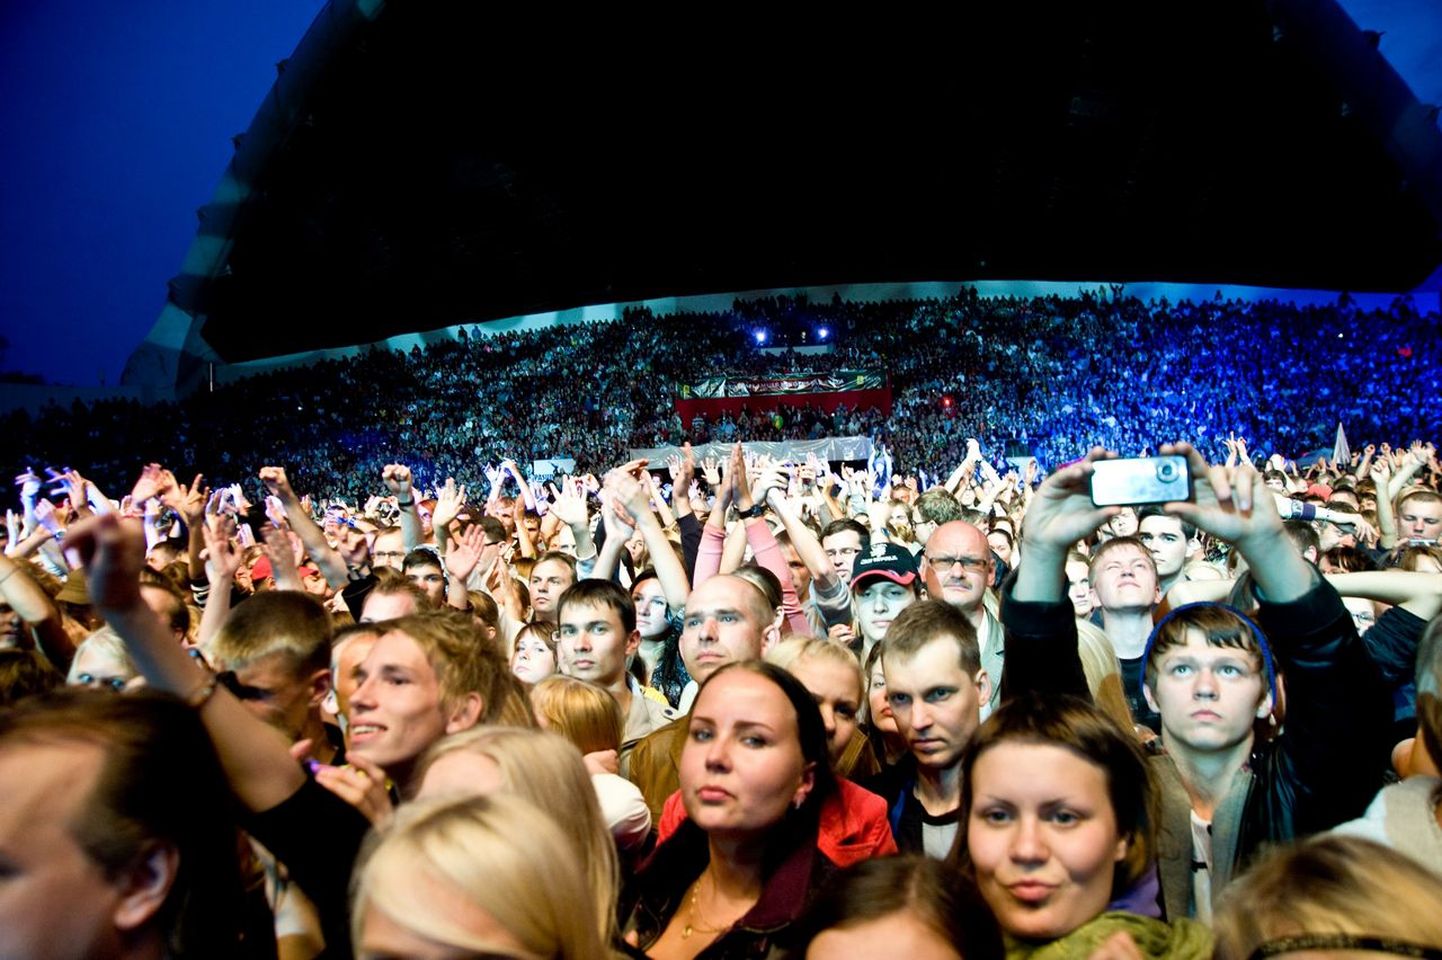 Moby kontsert Õllesummeri avapäeval 8. juulil 2009 lauluväljakul